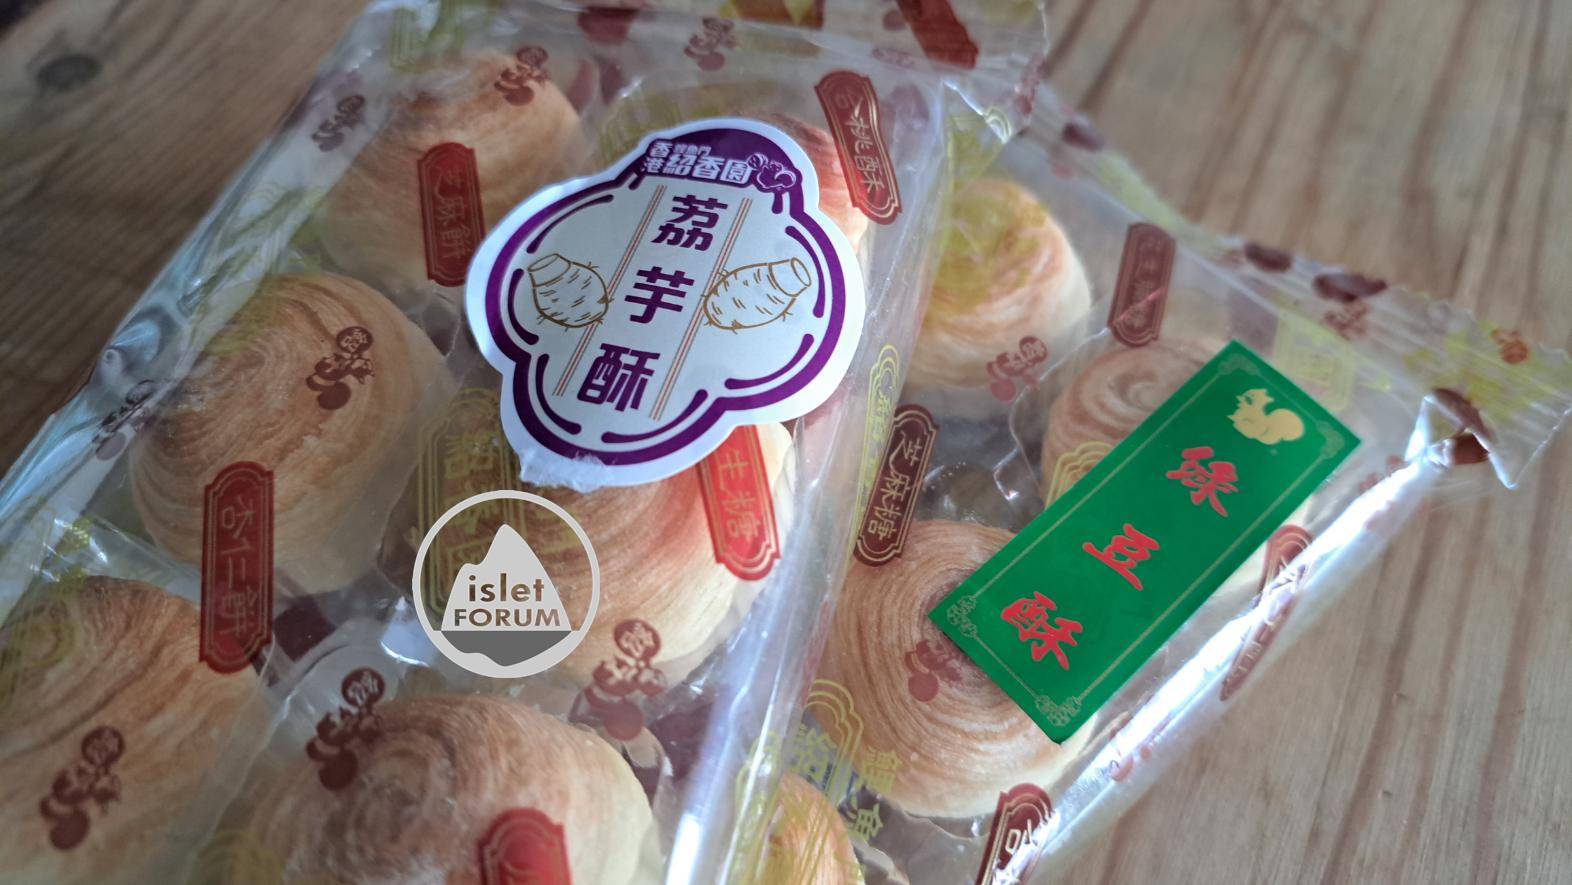 鯉魚門紹香園Shiu Heung Yuen 綠豆酥 100g 細細粒容易食Green Bean Pastry (2).jpg